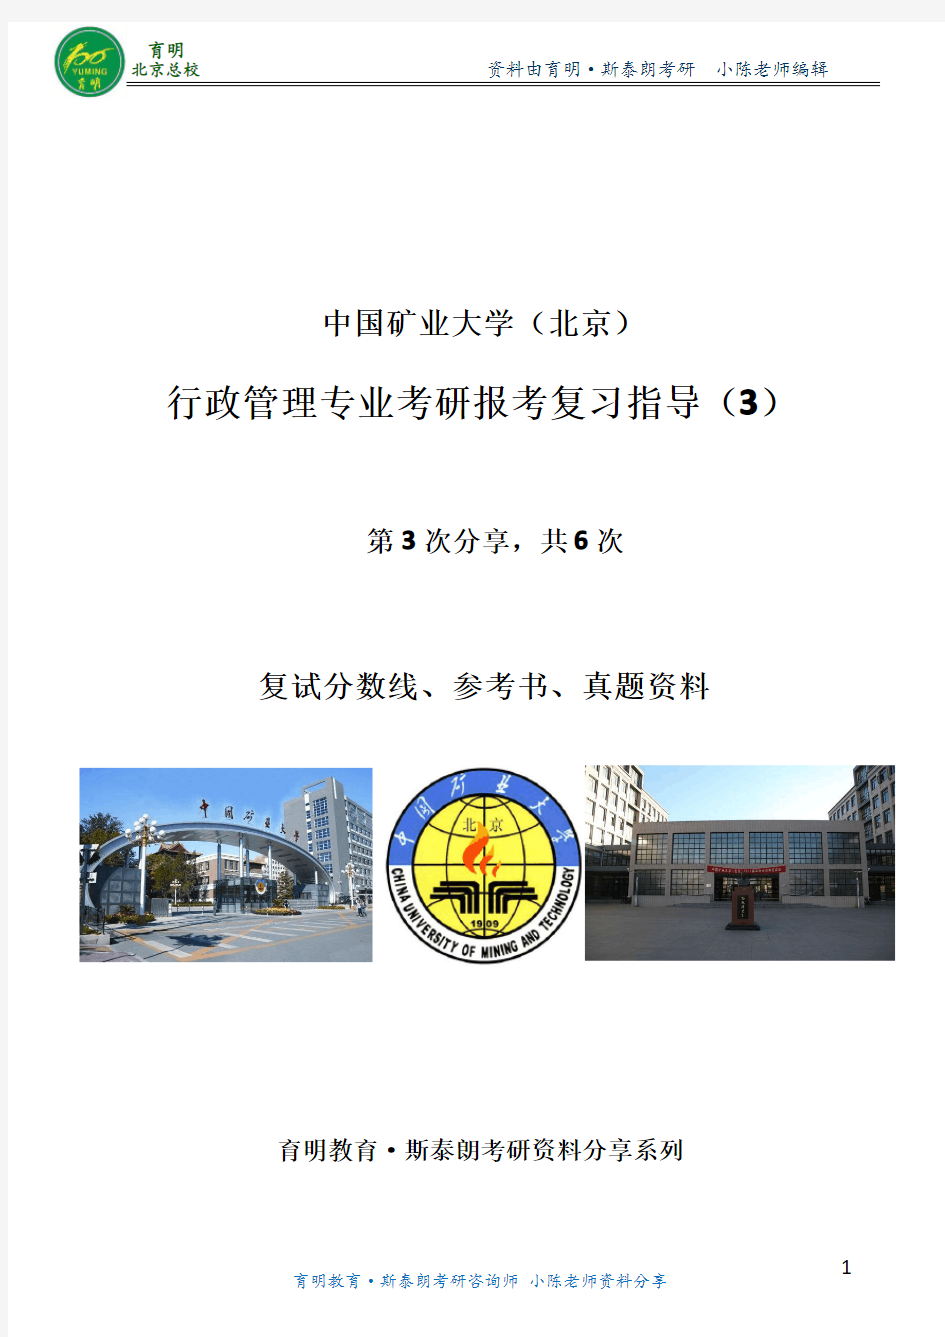 行管考研资料-中国矿业大学(北京)行管复试分数线-考试难度复试要求考试资料内部信息报考分析